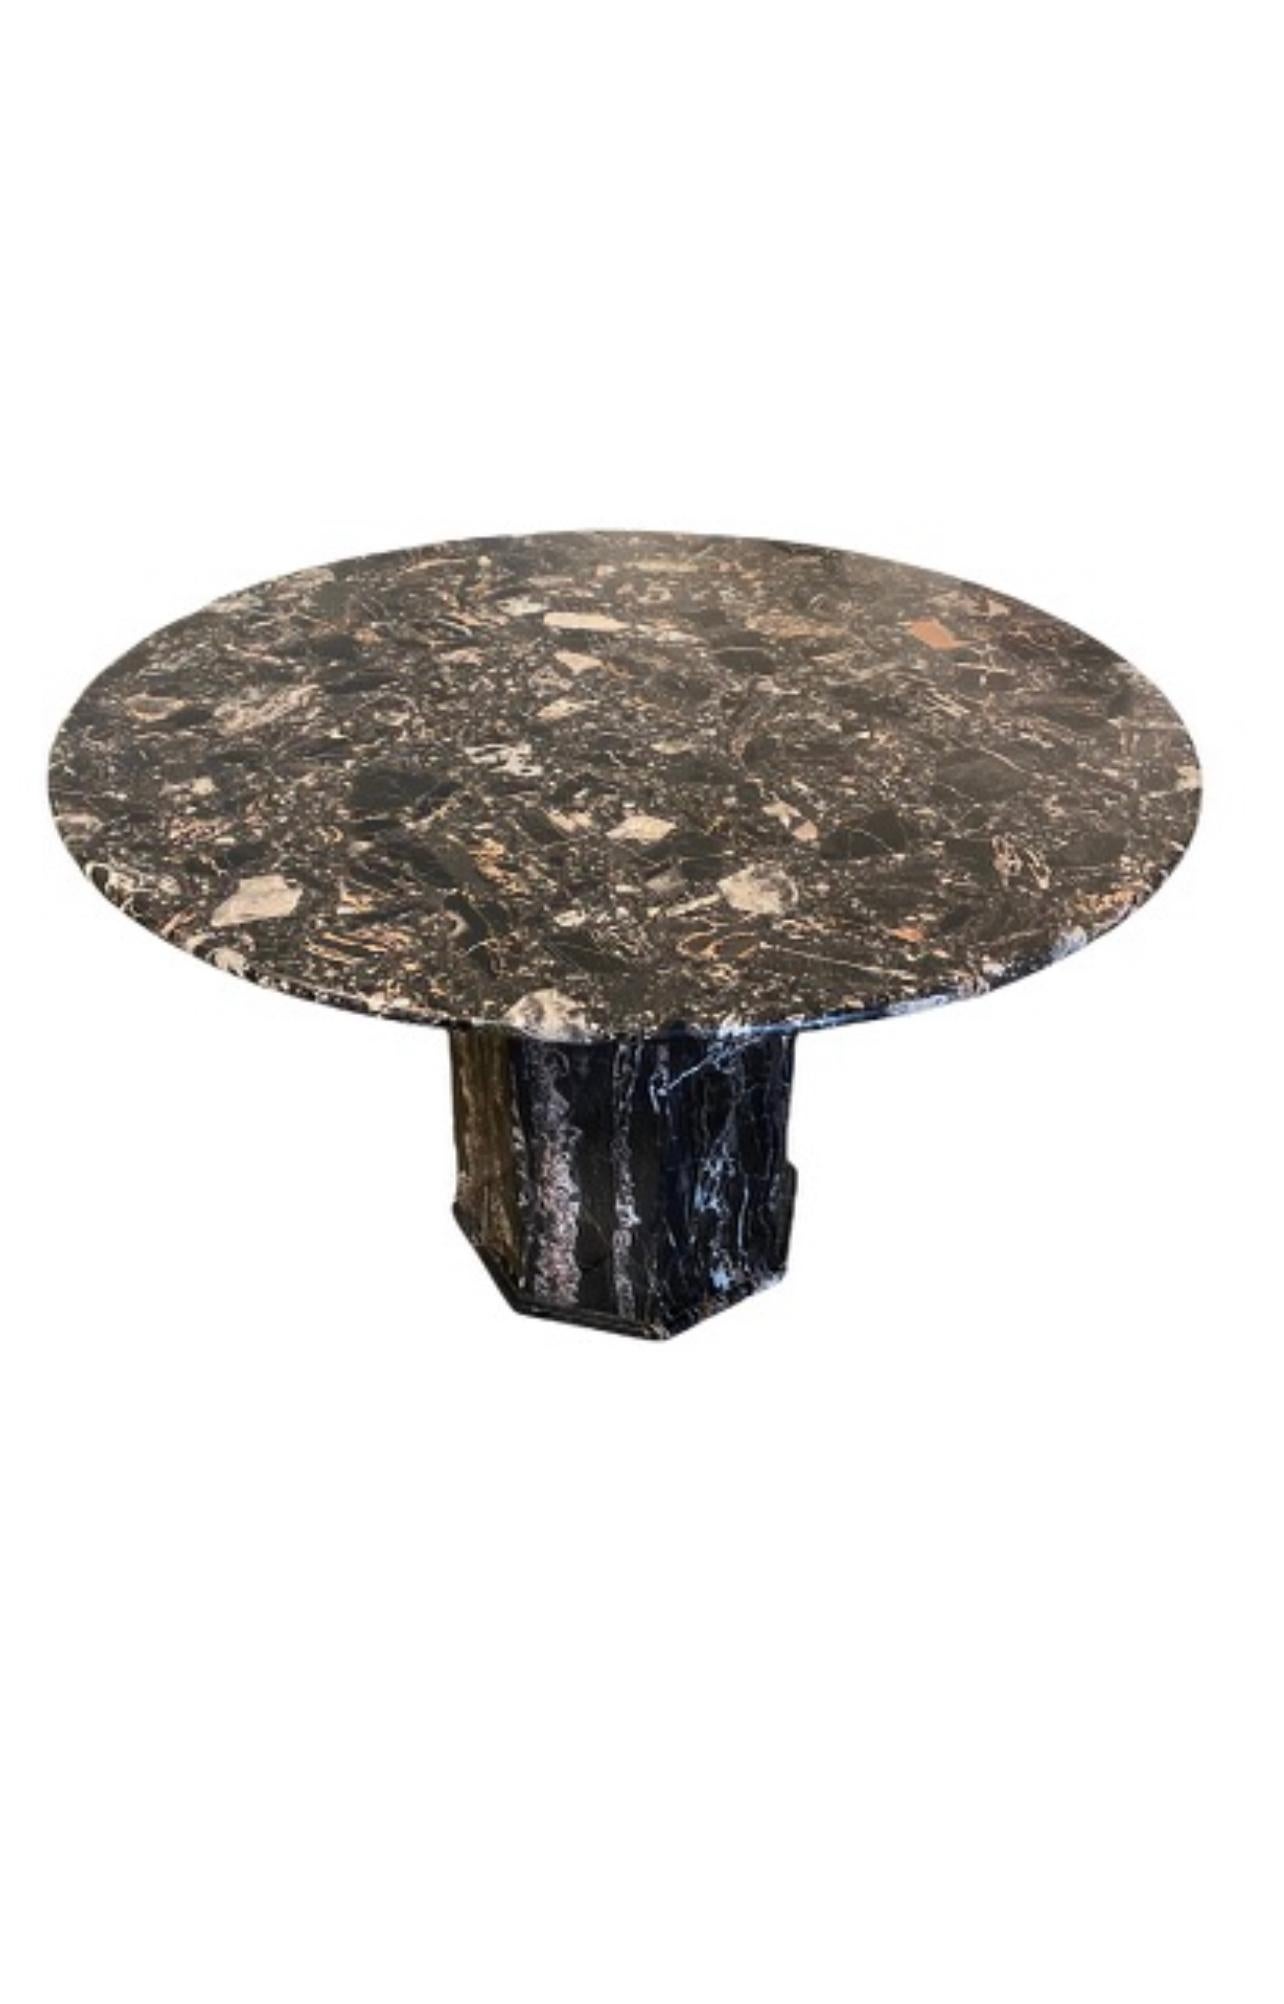 Une table centrale en marbre portoro 
Des nuances de noir, de blanc et de beige/rose. Magnifique mouvement et coloration de la pierre
La table a un aspect déco moderne.
La partie supérieure se sépare de la base pour faciliter le transport.